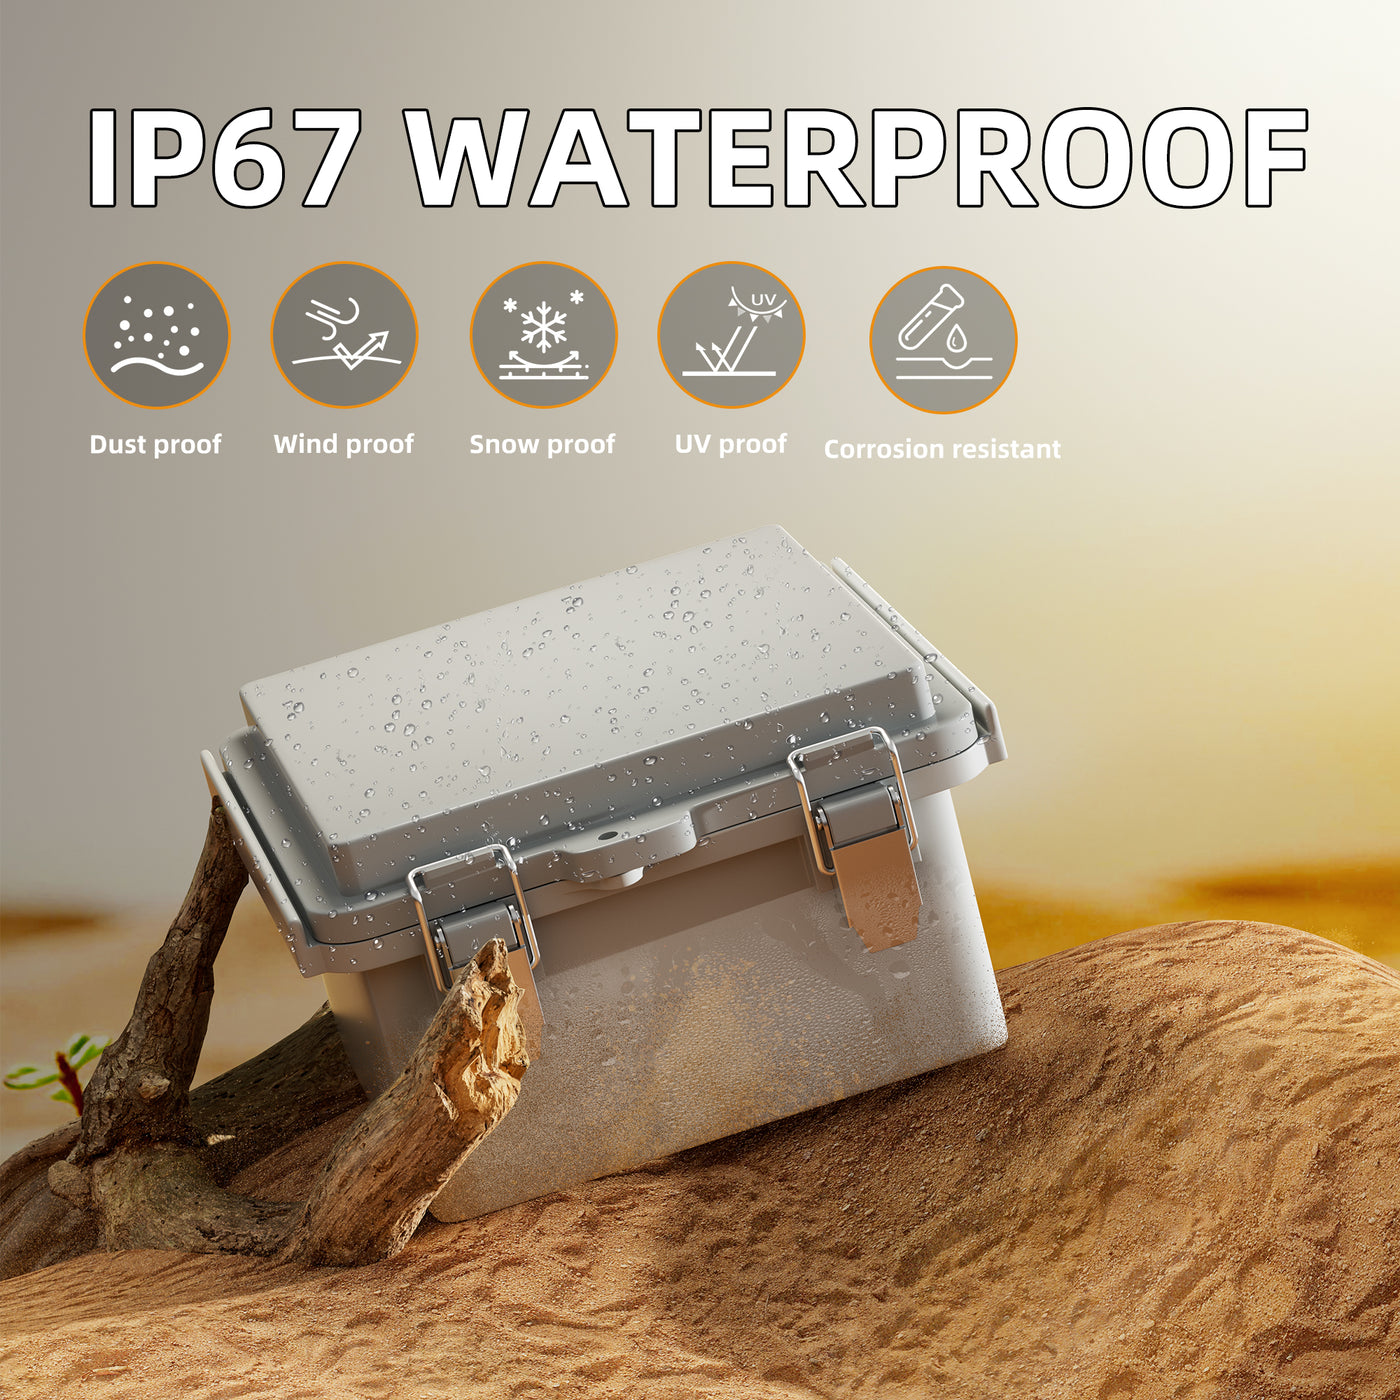 IP67 Waterproof Plastic Outdoor Electrical Junction Box - 5.1"x5.1"x3.3"